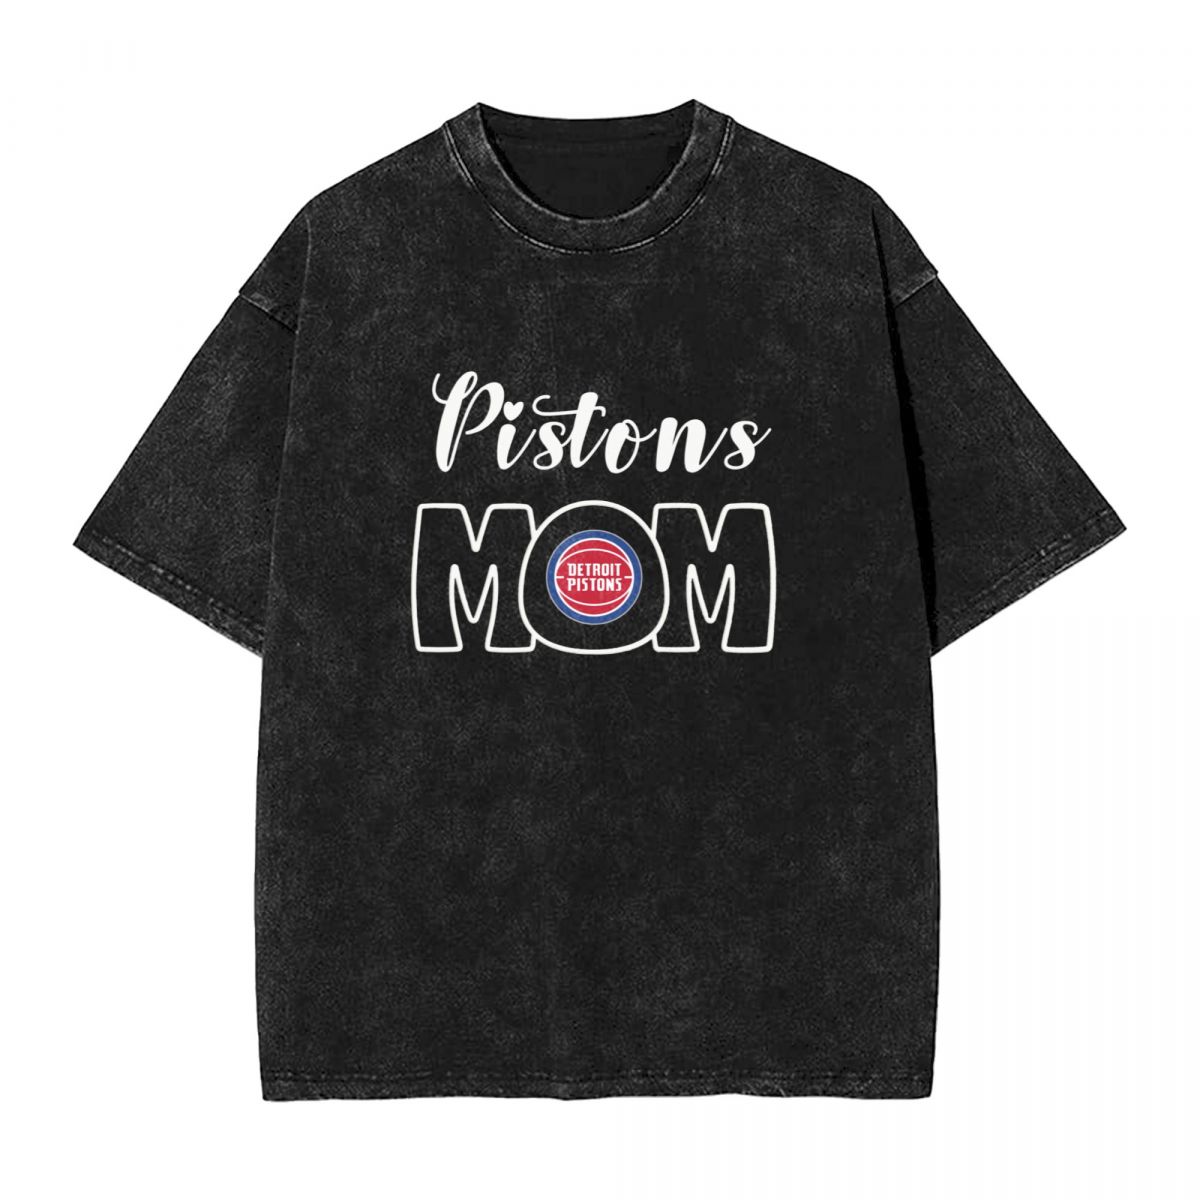 Detroit Pistons Mom Vintage Oversized T-Shirt Men's